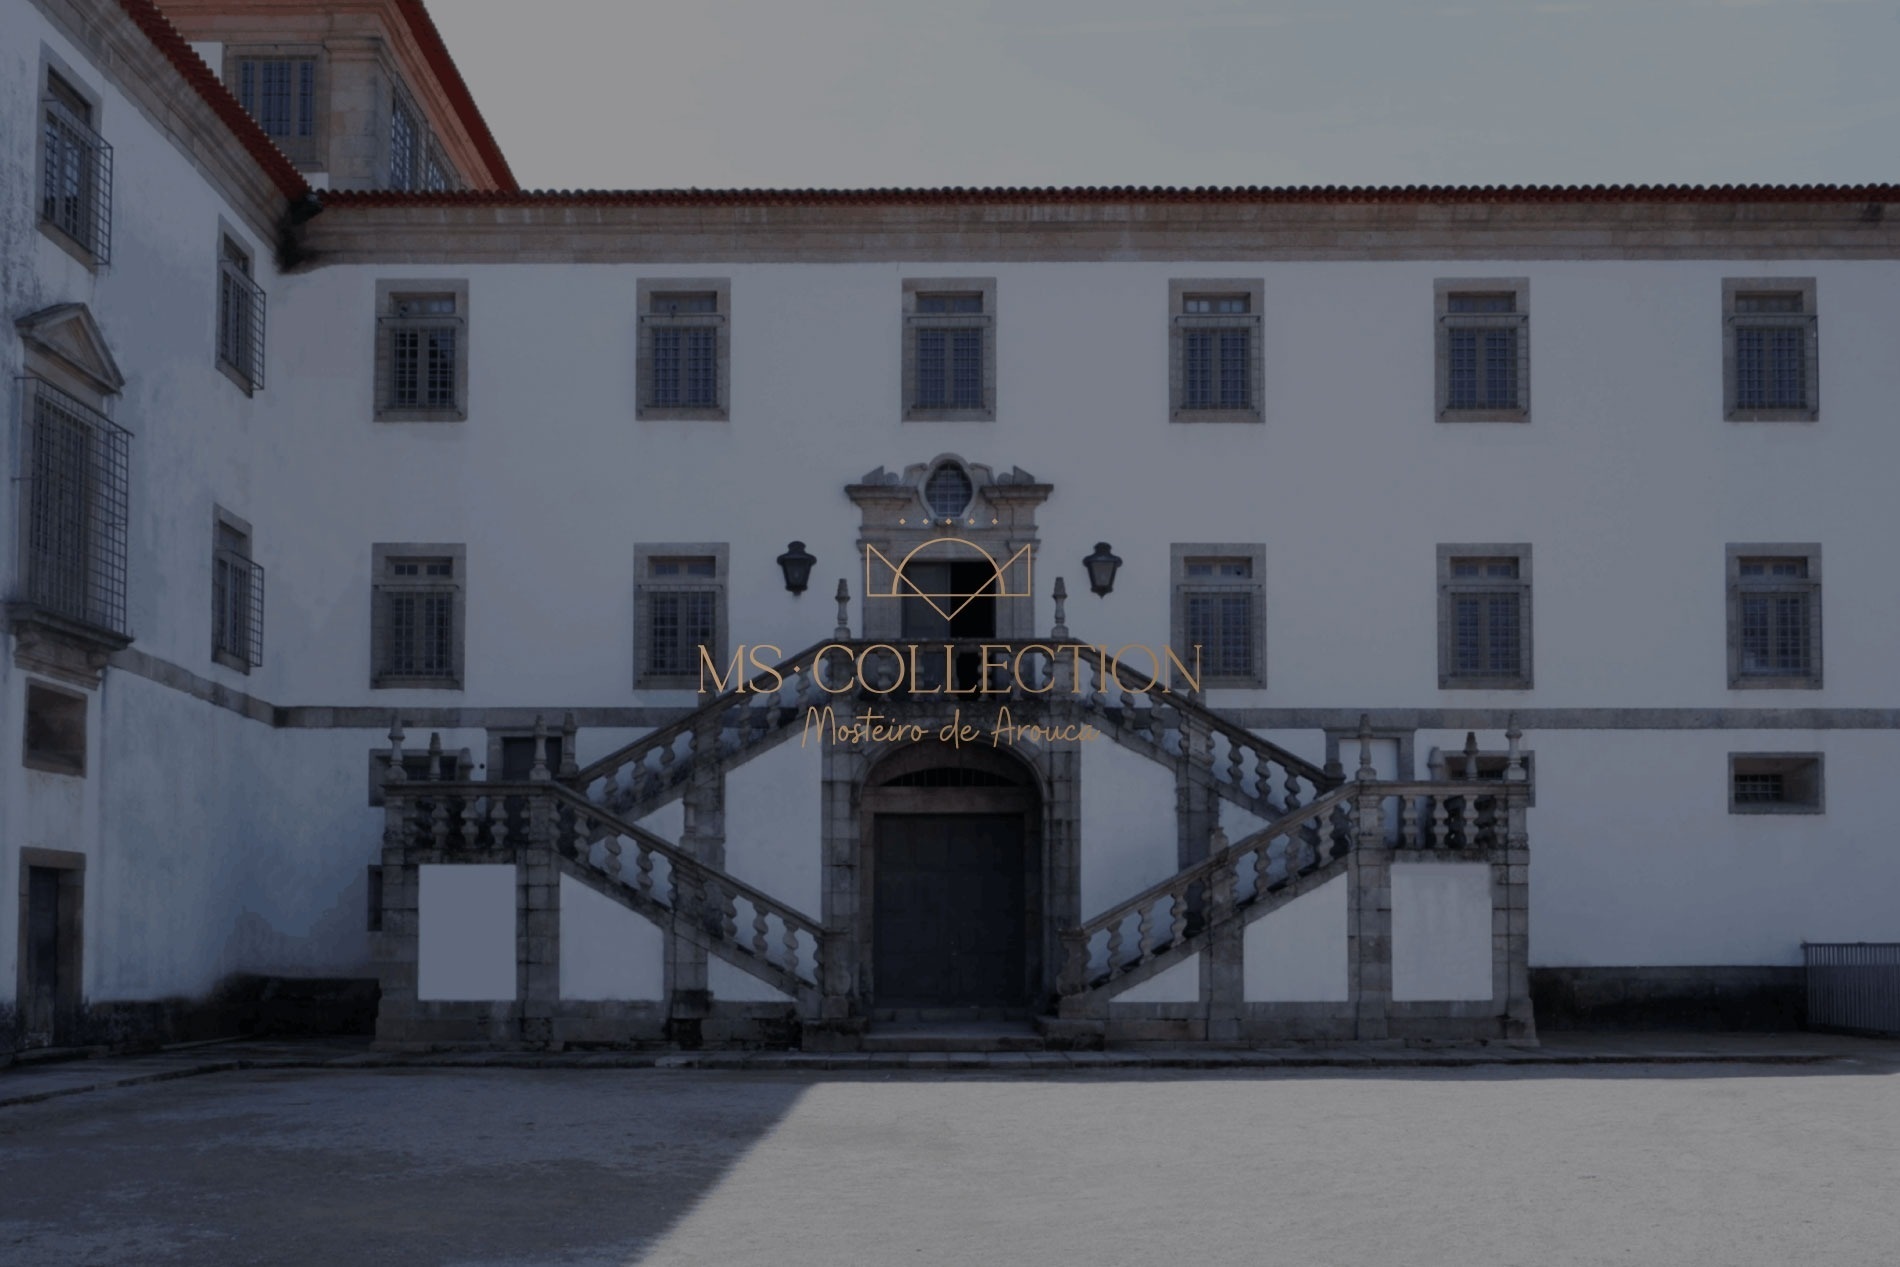 MS Collection Aveiro – Palacete de Valdemouro